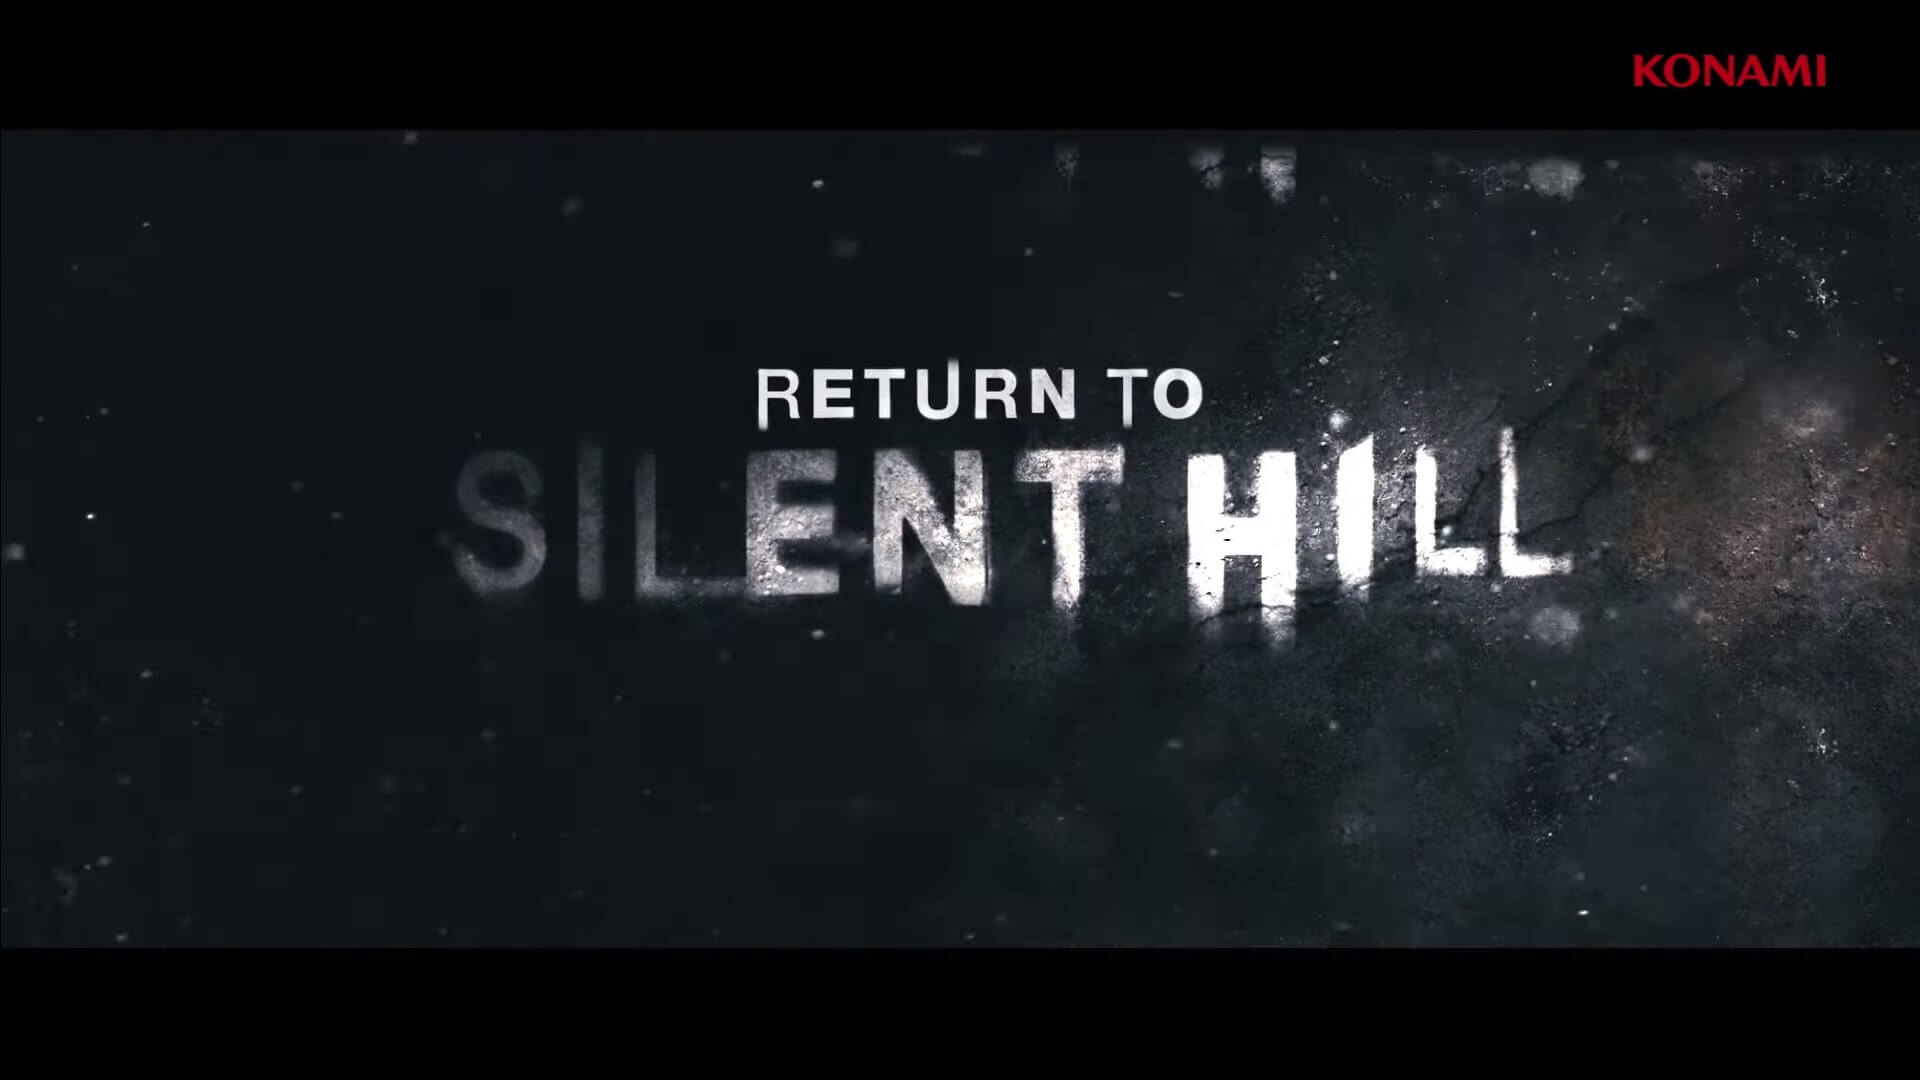 Return To Silent Hill Será O Novo Filme Da Franquia Última Ficha